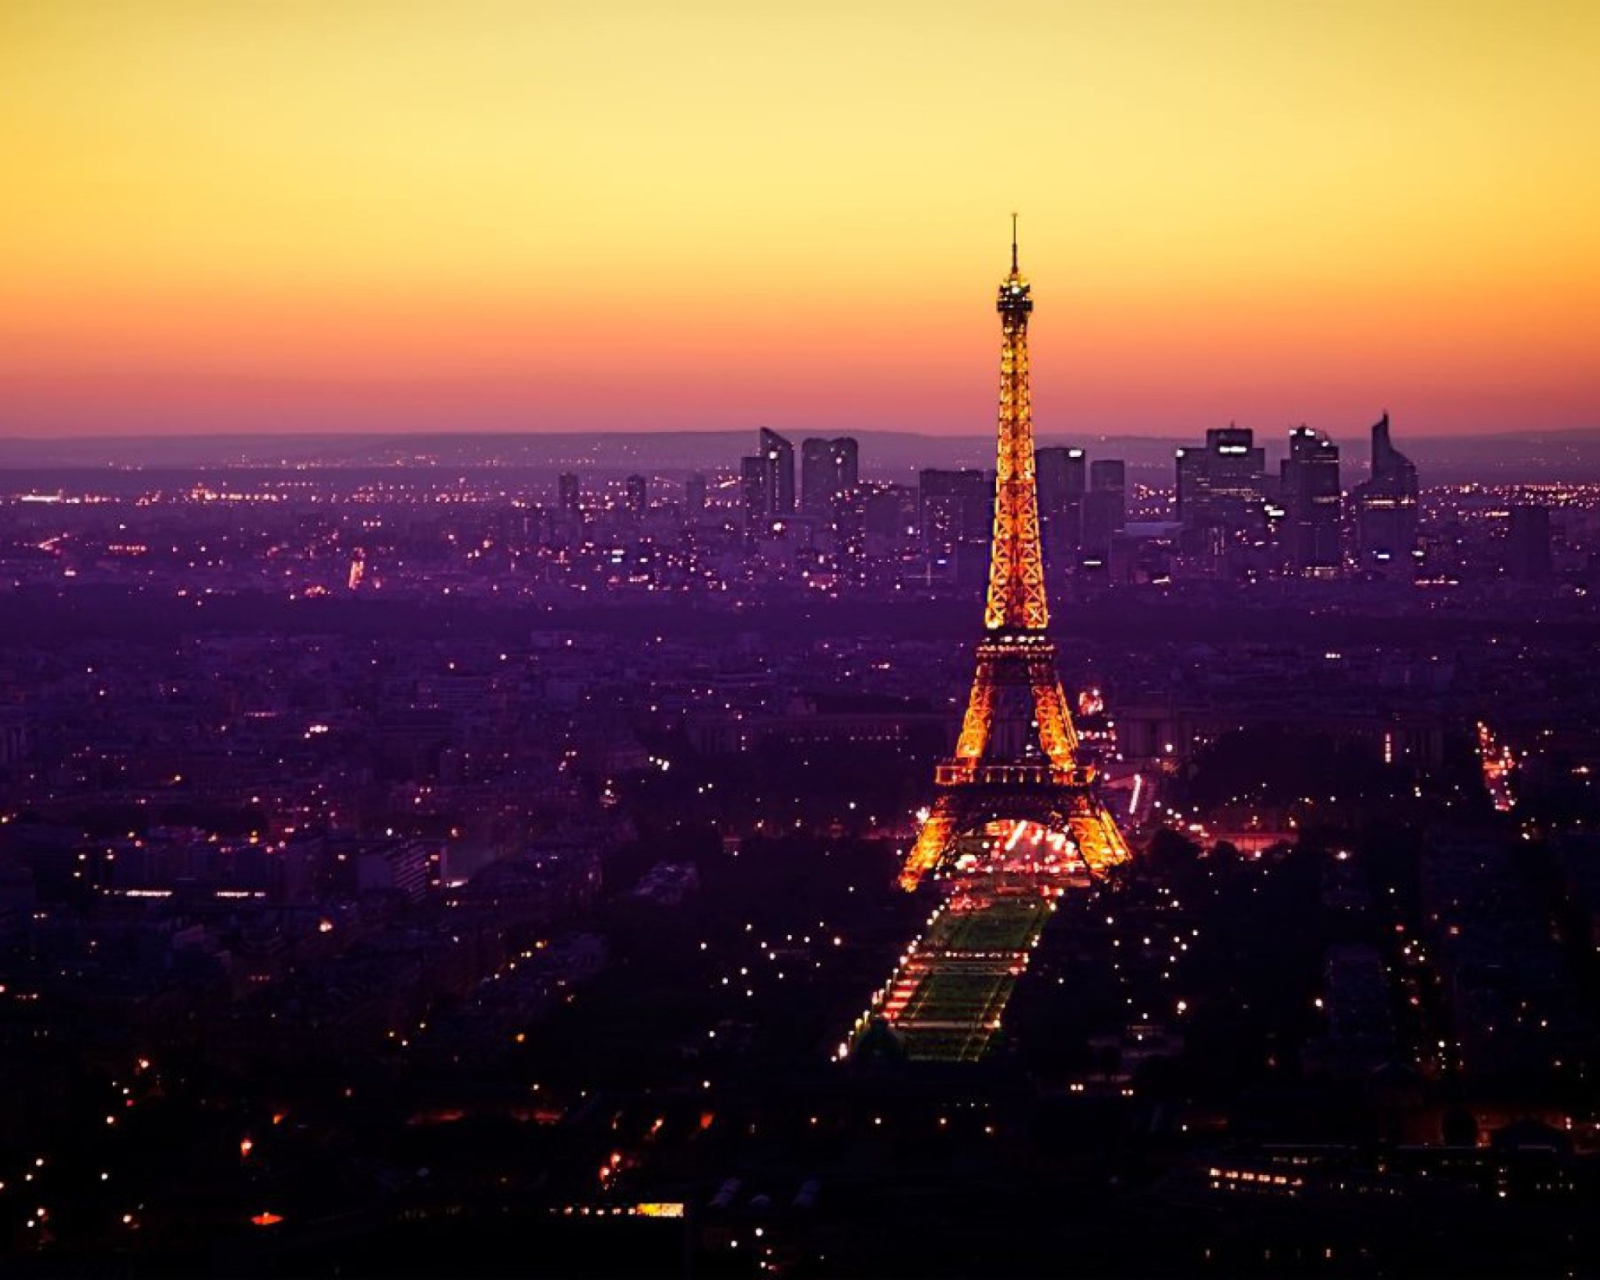 Das Eiffel Tower And Paris City Lights Wallpaper 1600x1280